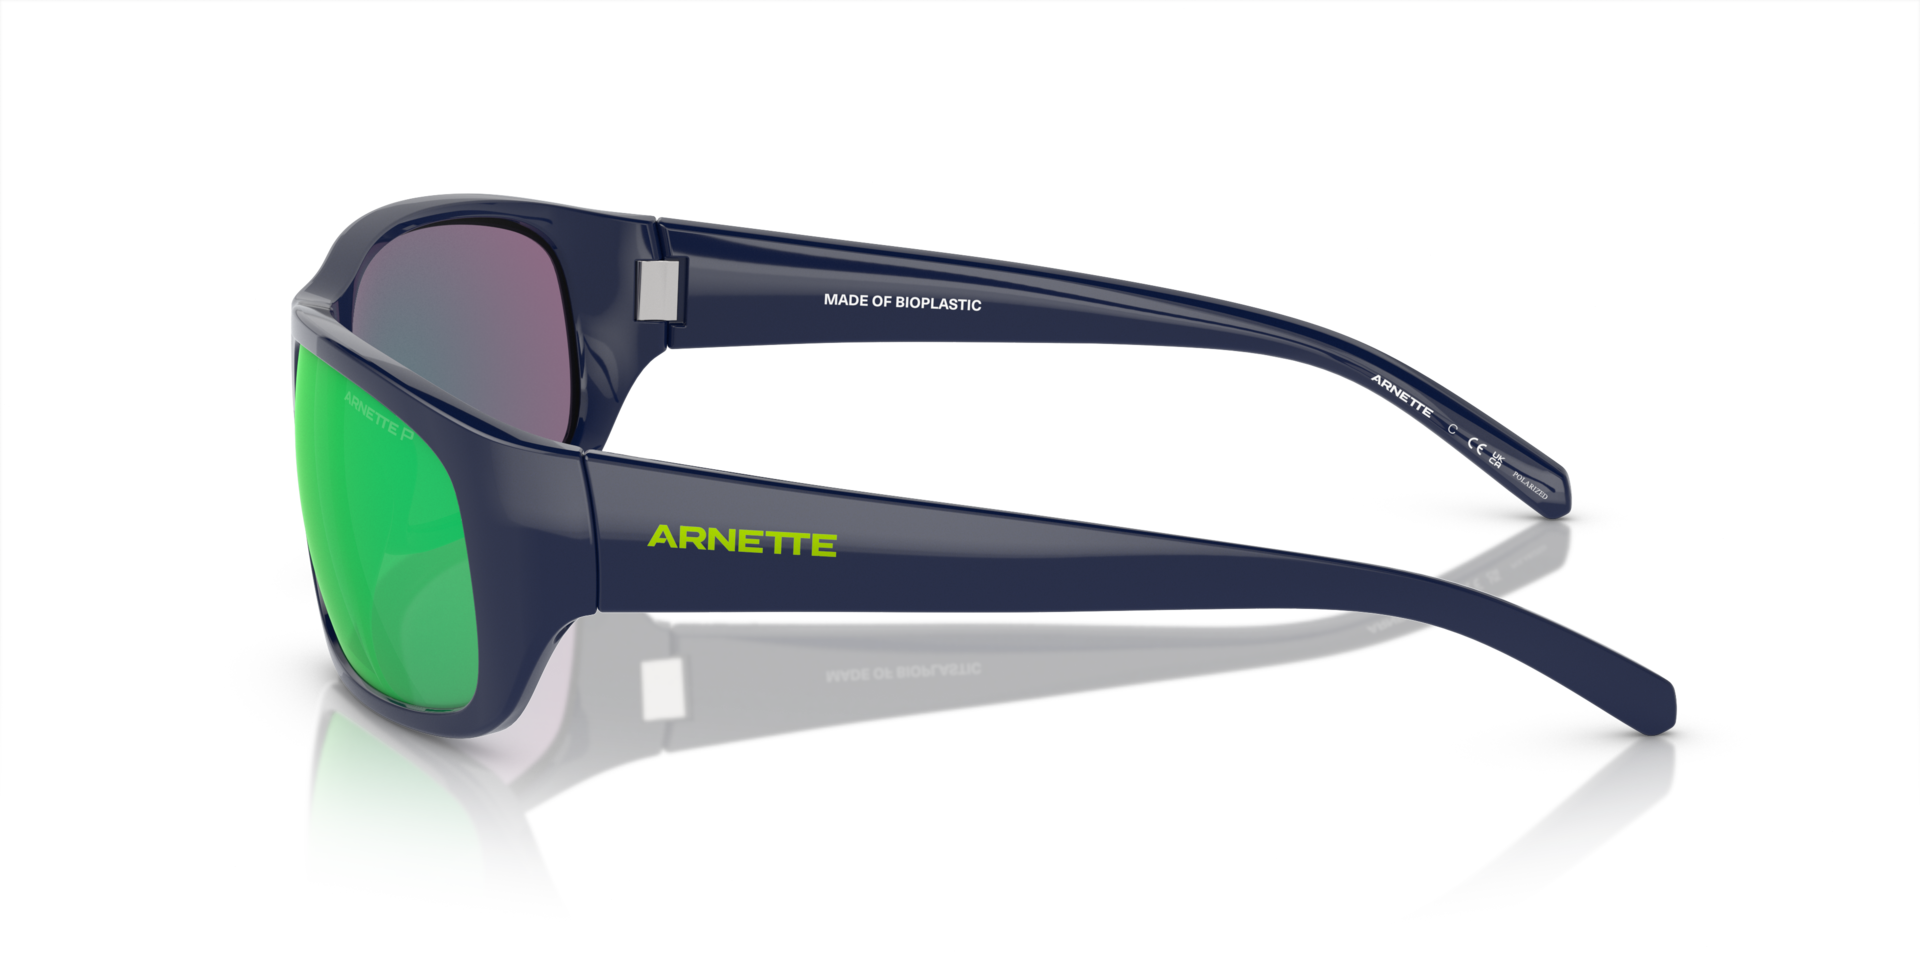 Das Bild zeigt die Sonnenbrille AN4290 27541I von der Marke Arnette in Schwarz/Grün.